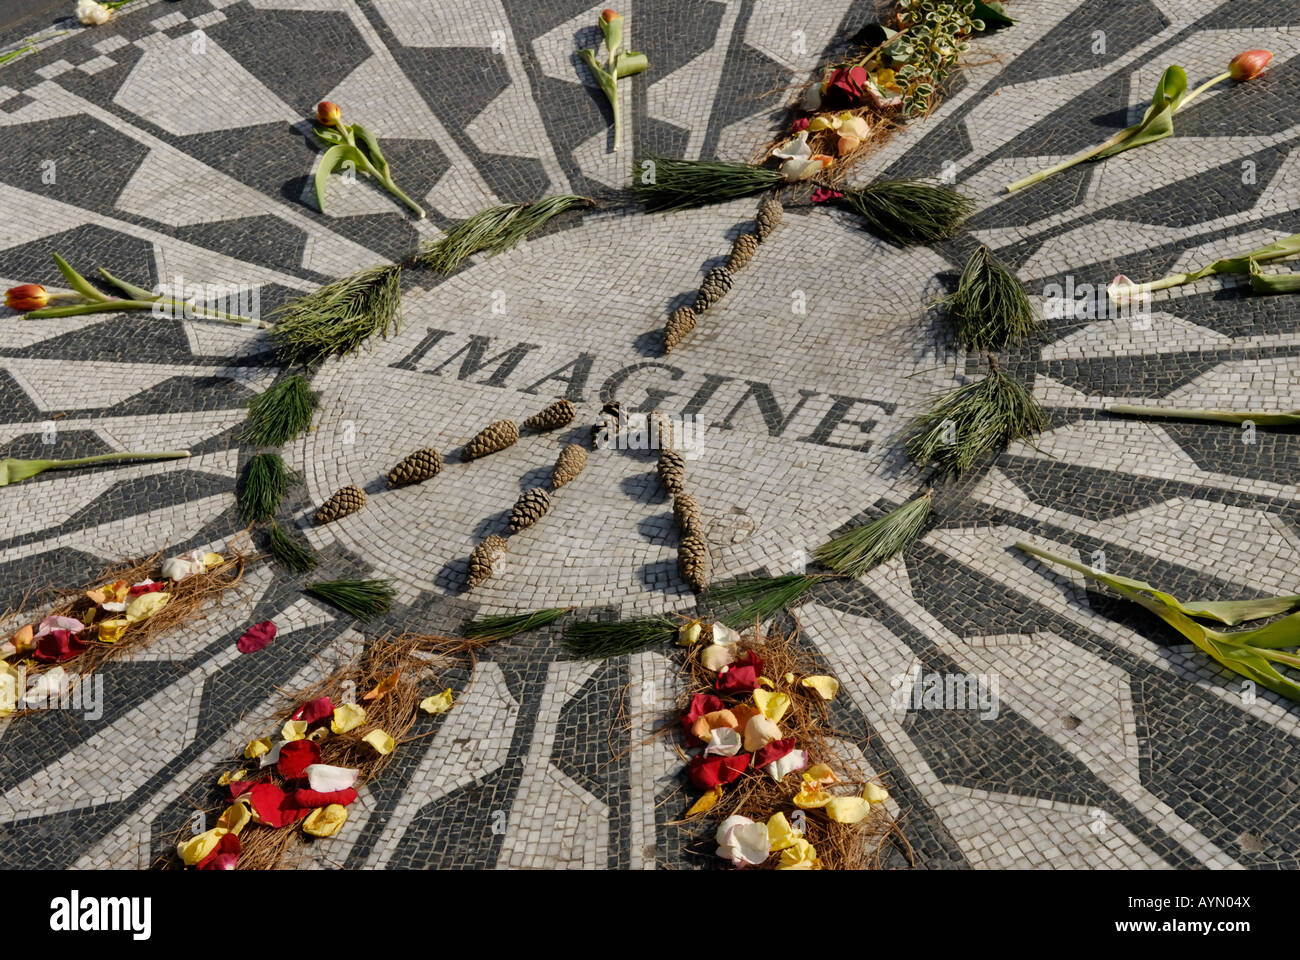 La mosaïque Imagine John Lennon memorial à Central Park à New York Banque D'Images